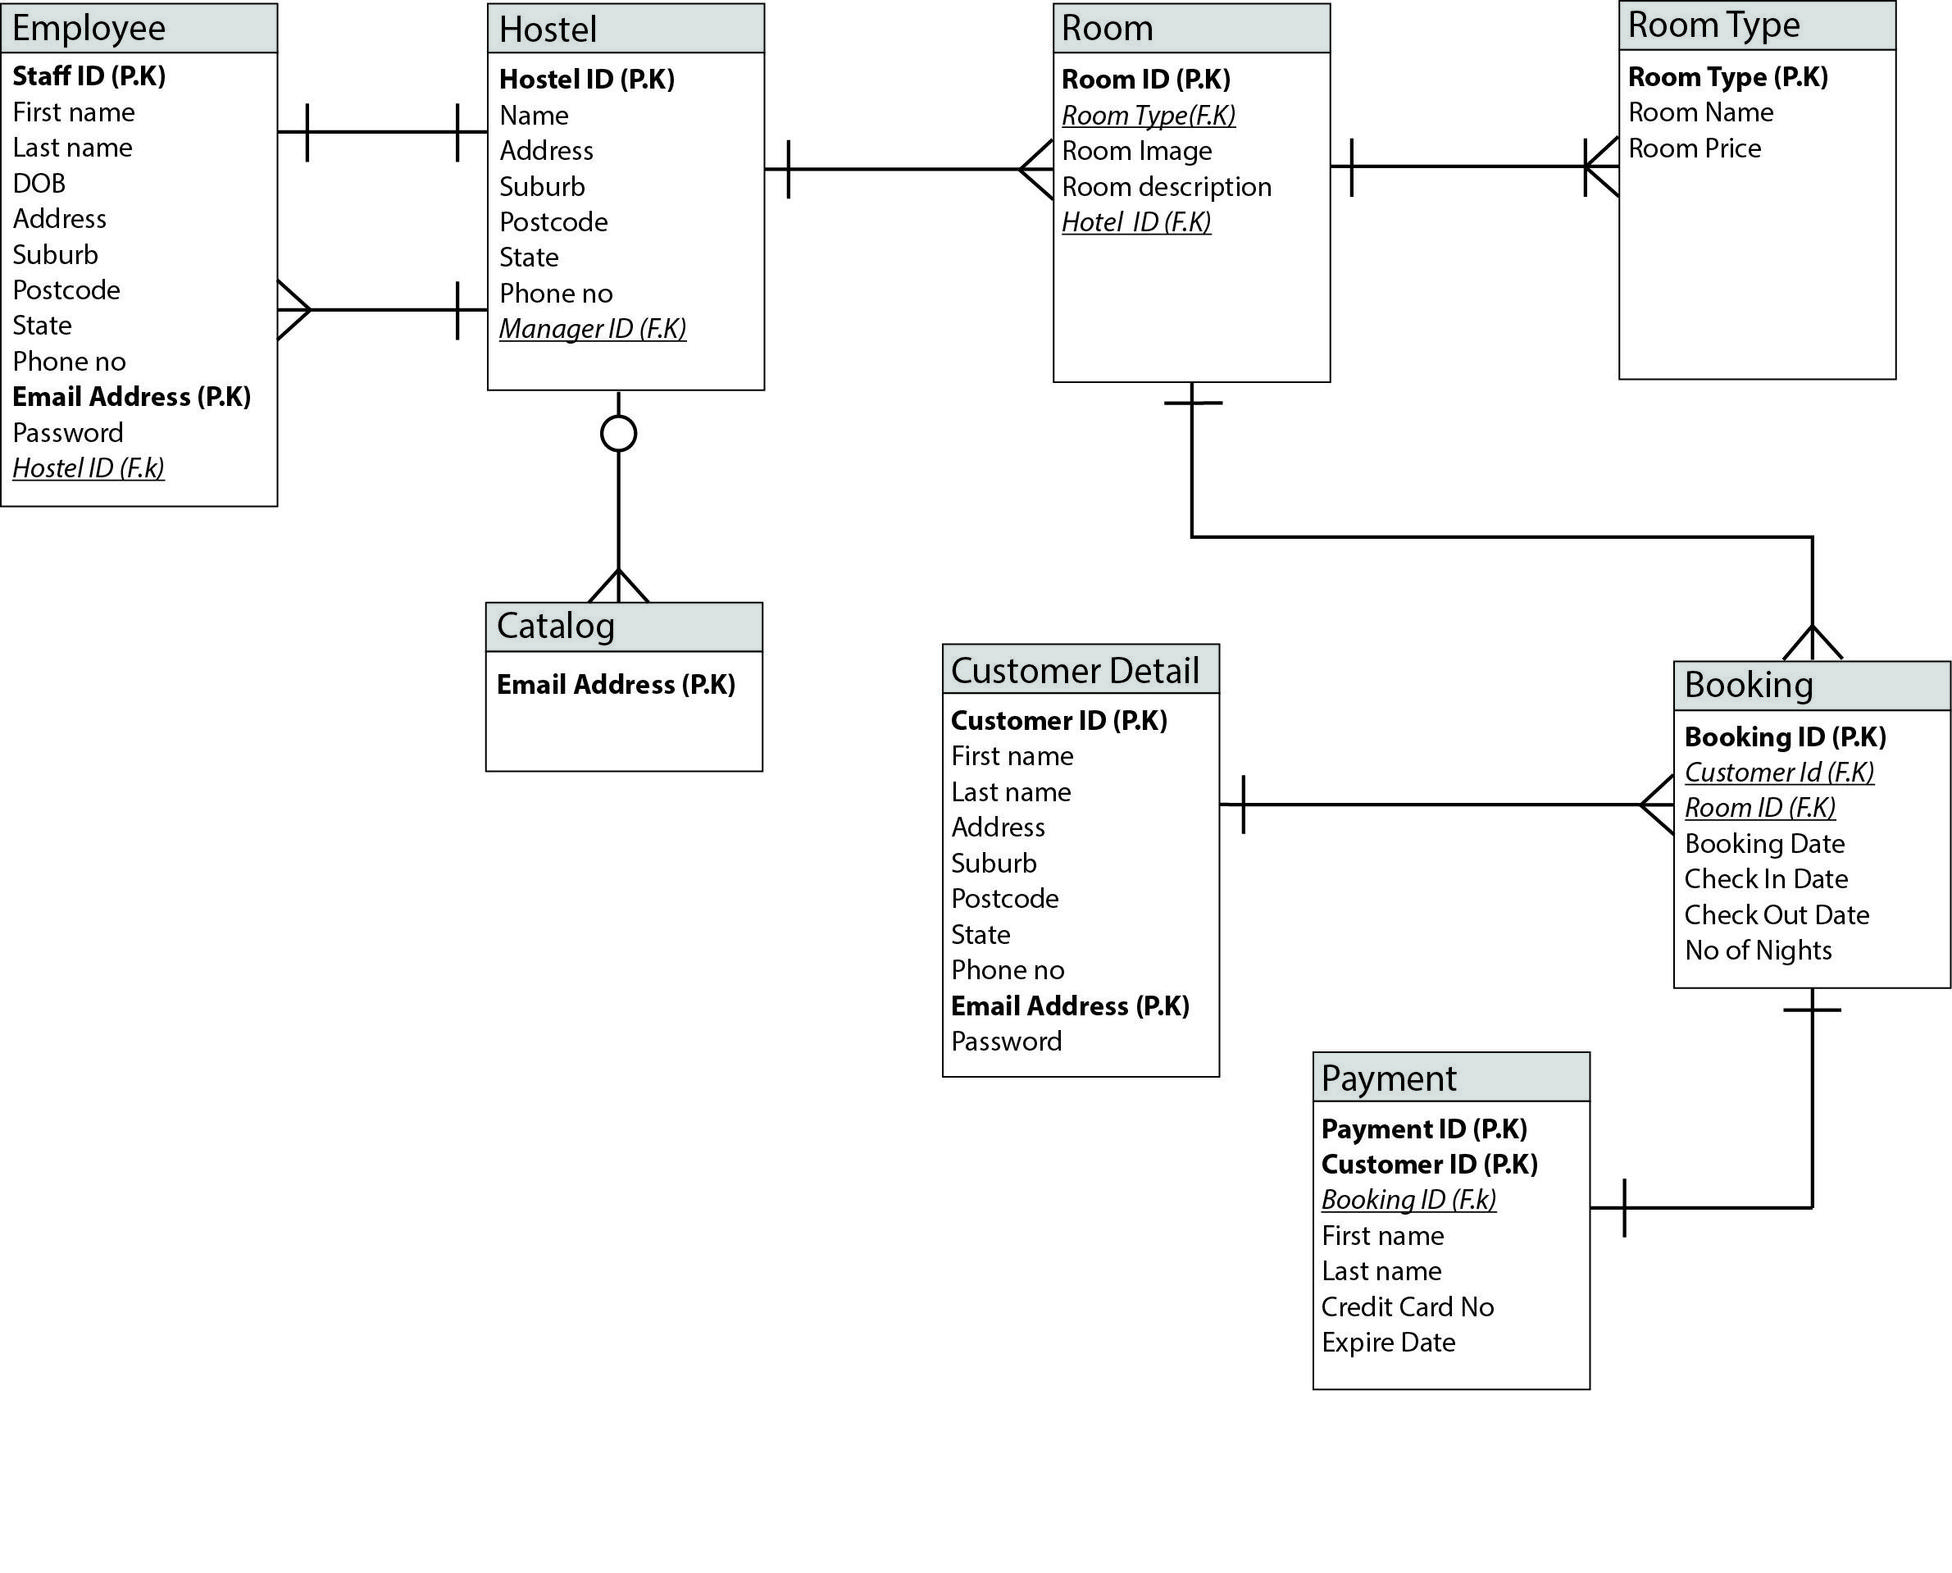 Online Hostel Management System Er Diagram - Database pertaining to Er Diagram Online